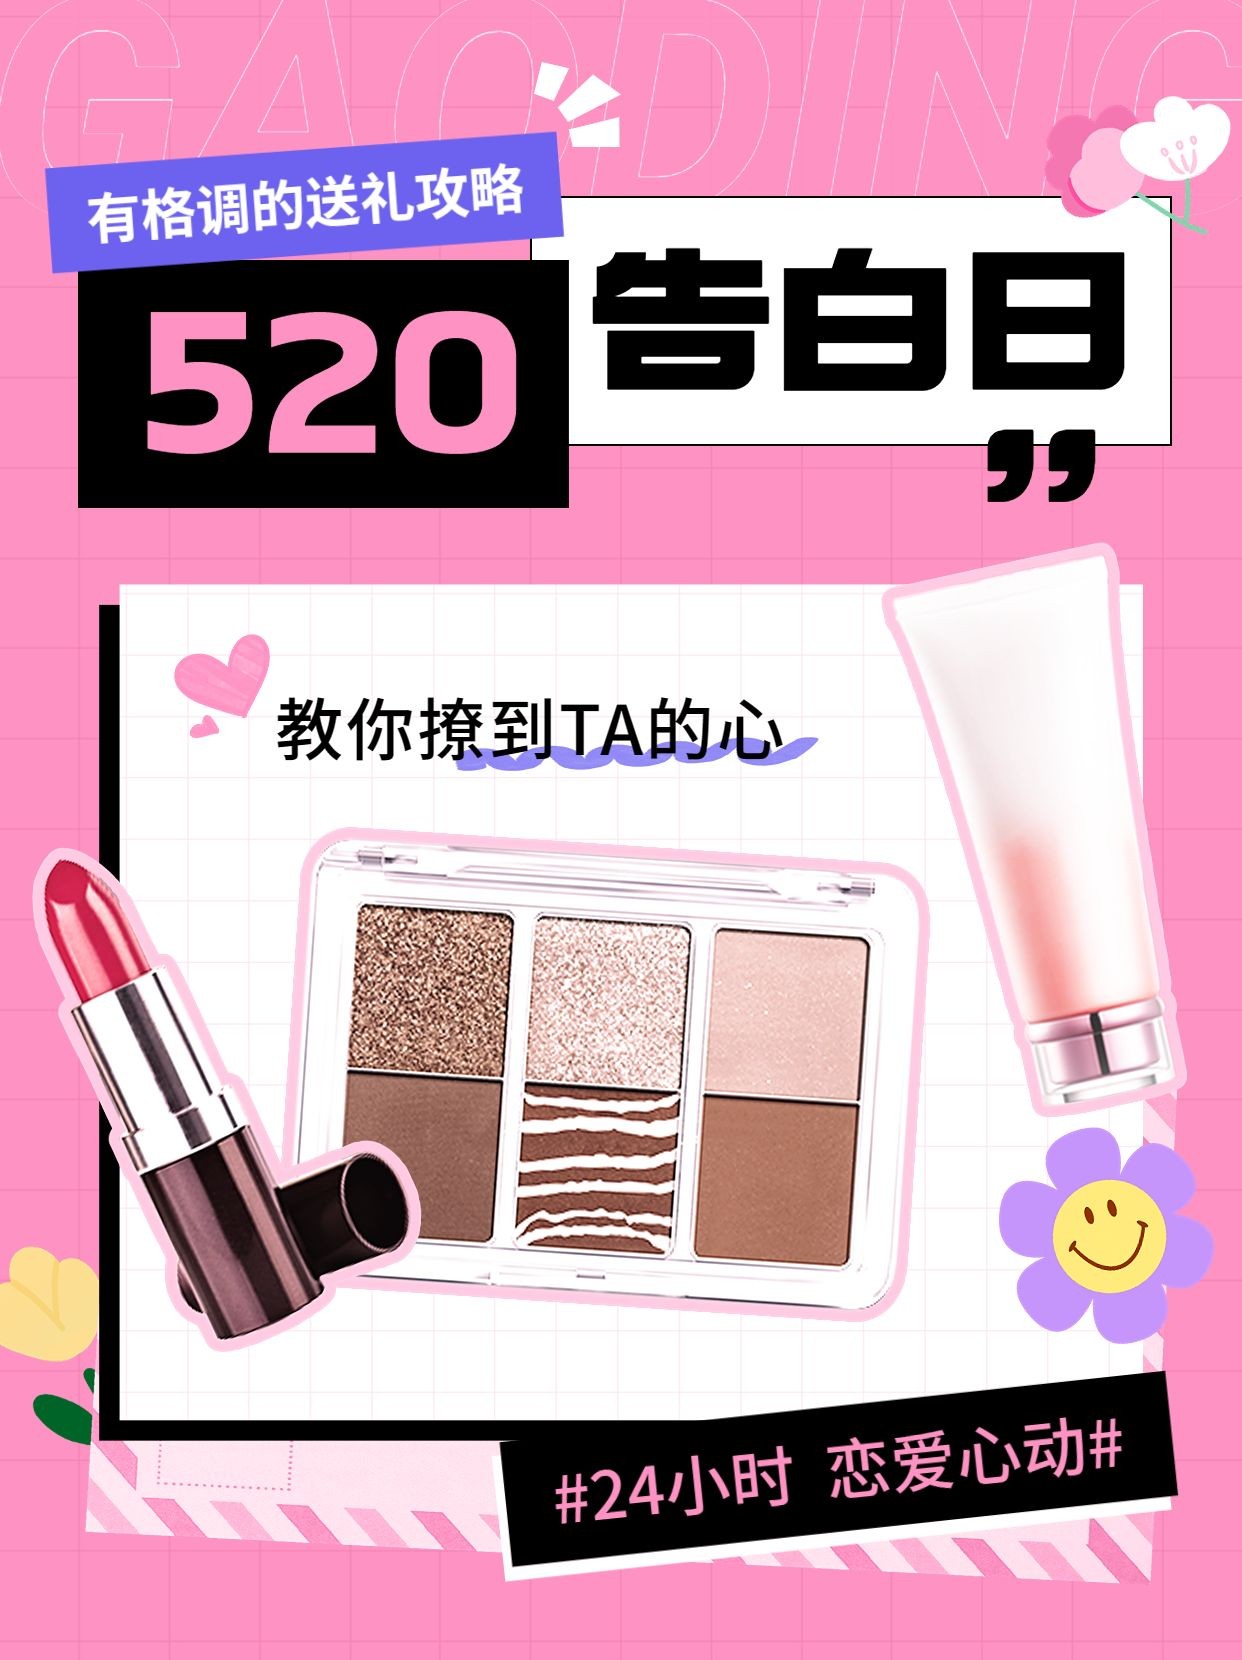 520情人节美容美妆化妆品攻略指南-送礼攻略小红书封面套装